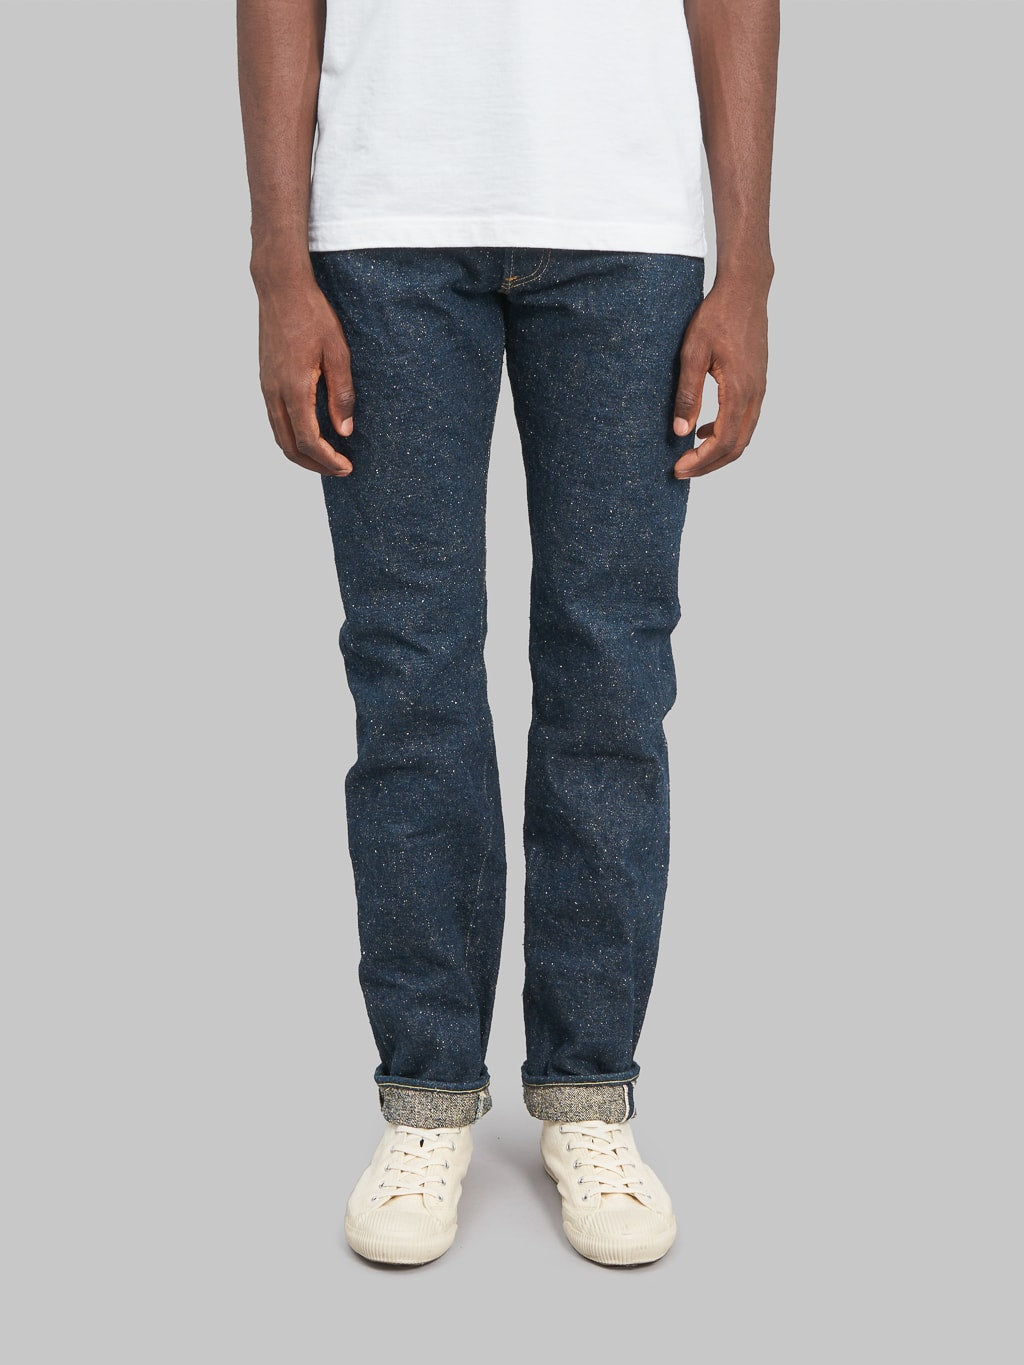 ONI Denim 246SESR Secret Super Rough Neat Straight selvedge Jeans front fit